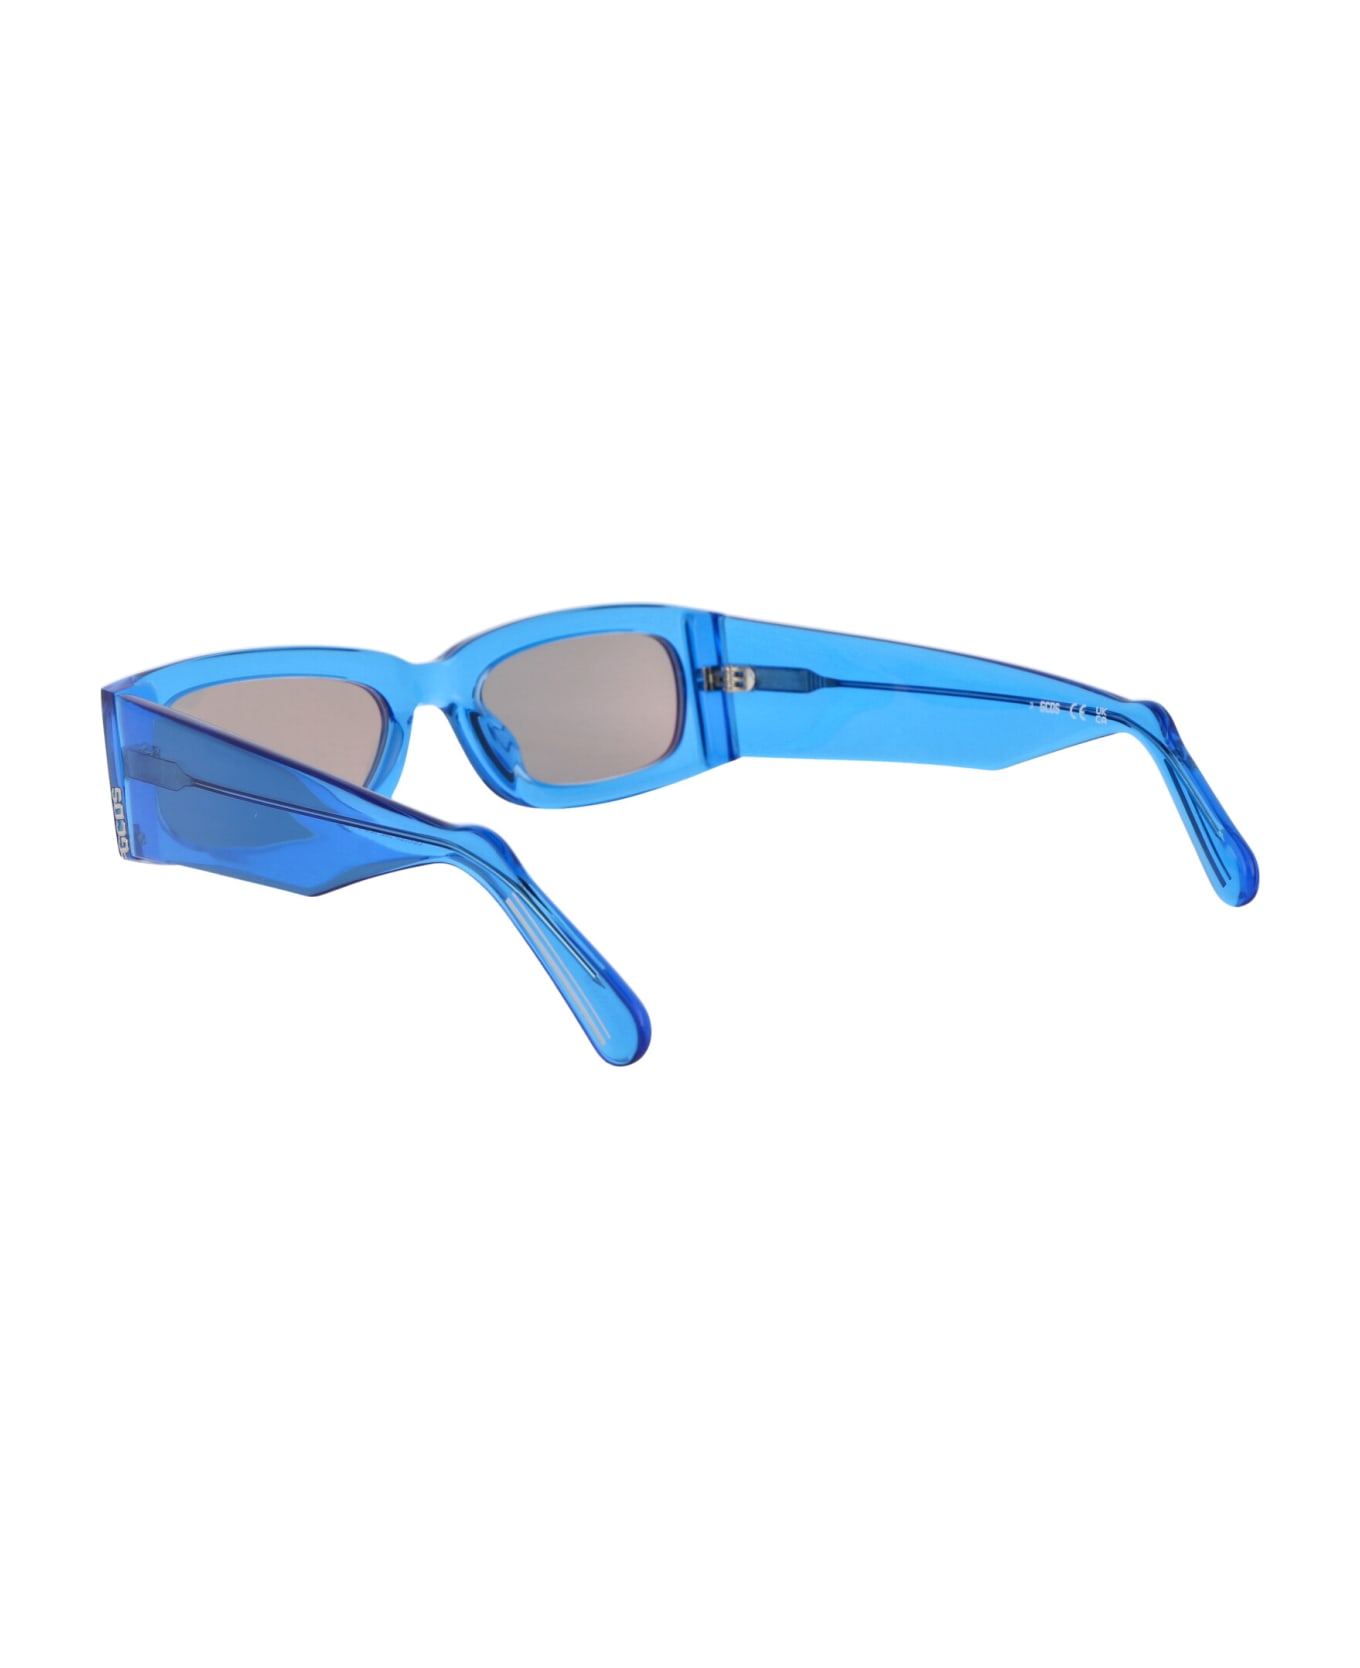 GCDS Gd0020 Sunglasses - 90L Blu Luc/Roviex Specchiato サングラス